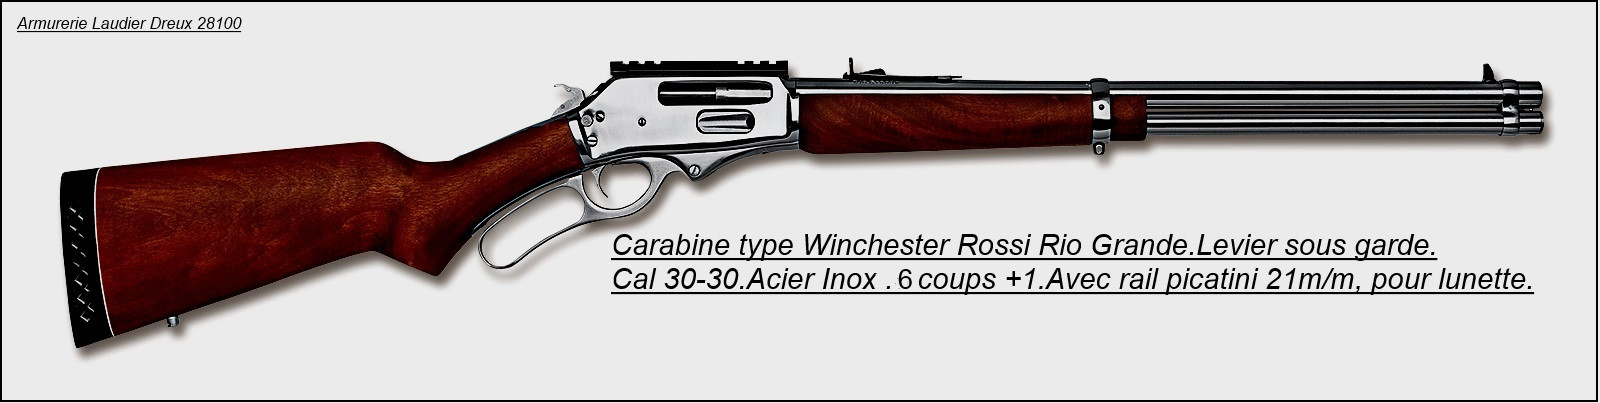 Carabine Rossi Rio Grande. Acier inoxydable --Calibre 30-30.Ref 20186